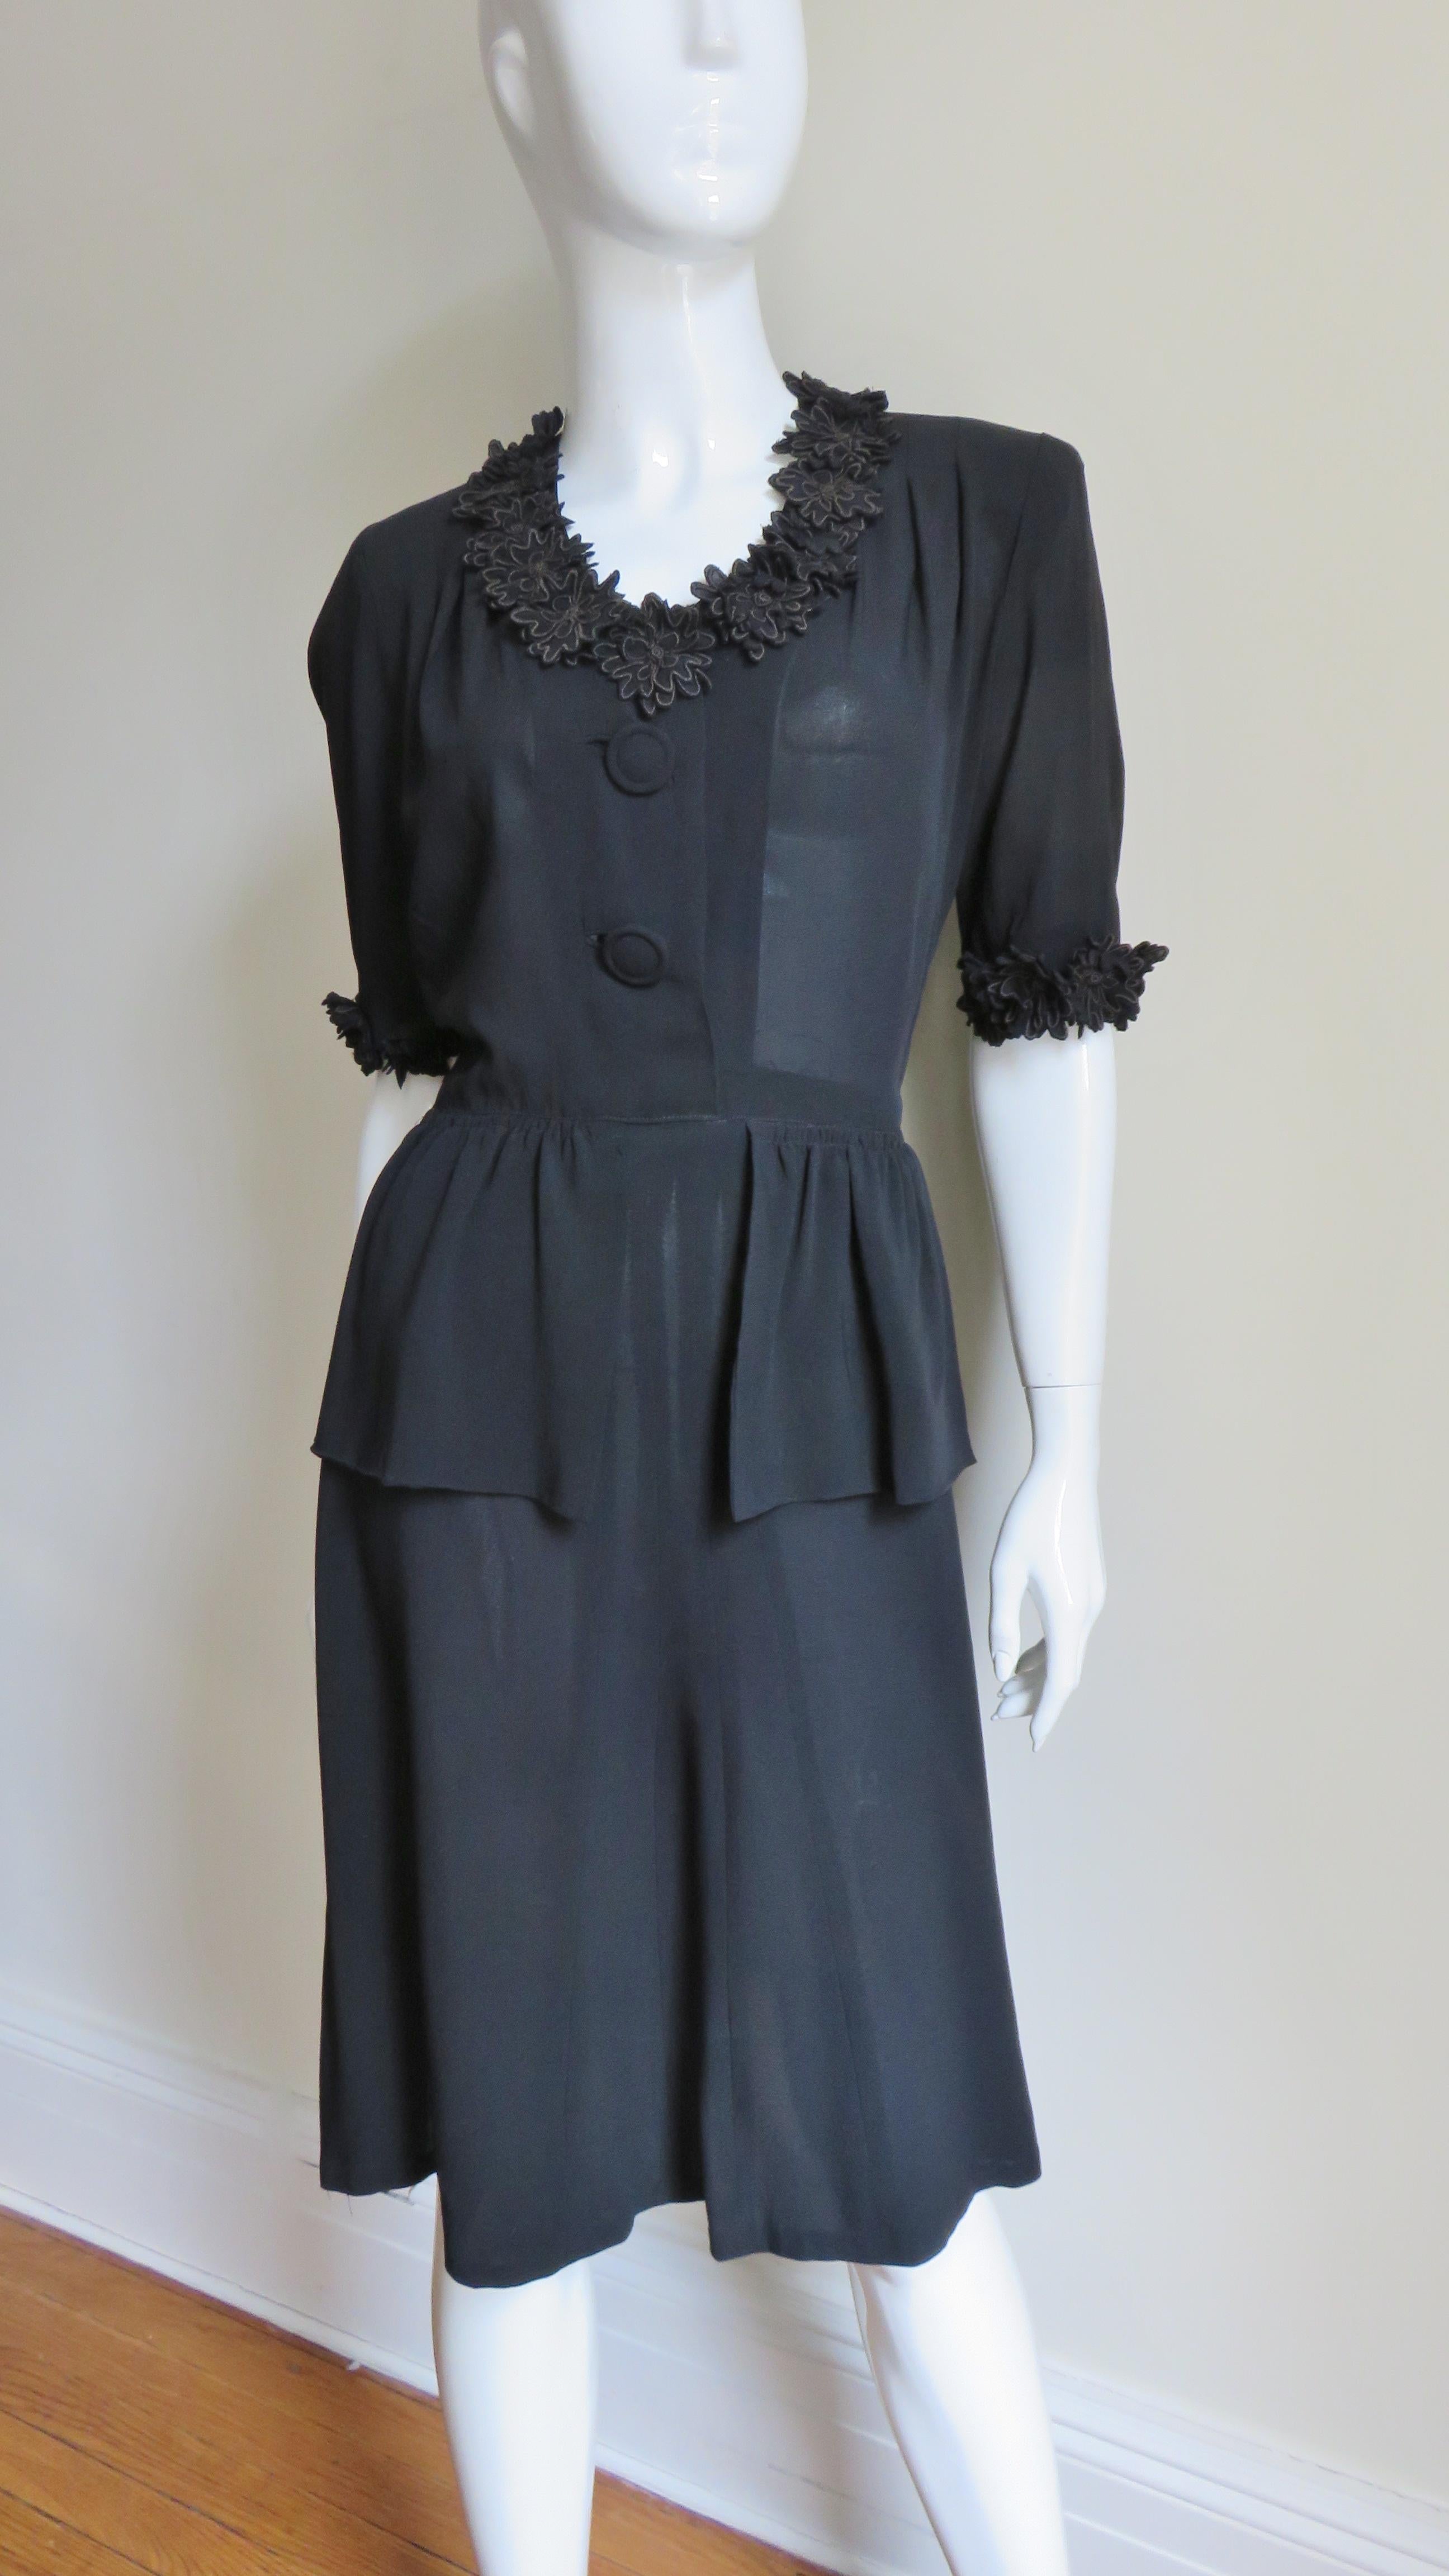 Ein fabelhaftes kleines schwarzes Seidenkleid aus den 1940er Jahren. Es hat einen V-Ausschnitt, ellenbogenlange Ärmel, Schulterpolster und ein Schößchen vorne am A-Linien-Rock. Das Mieder ist vorne mit 2 selbstklebenden Knöpfen und gebundenen